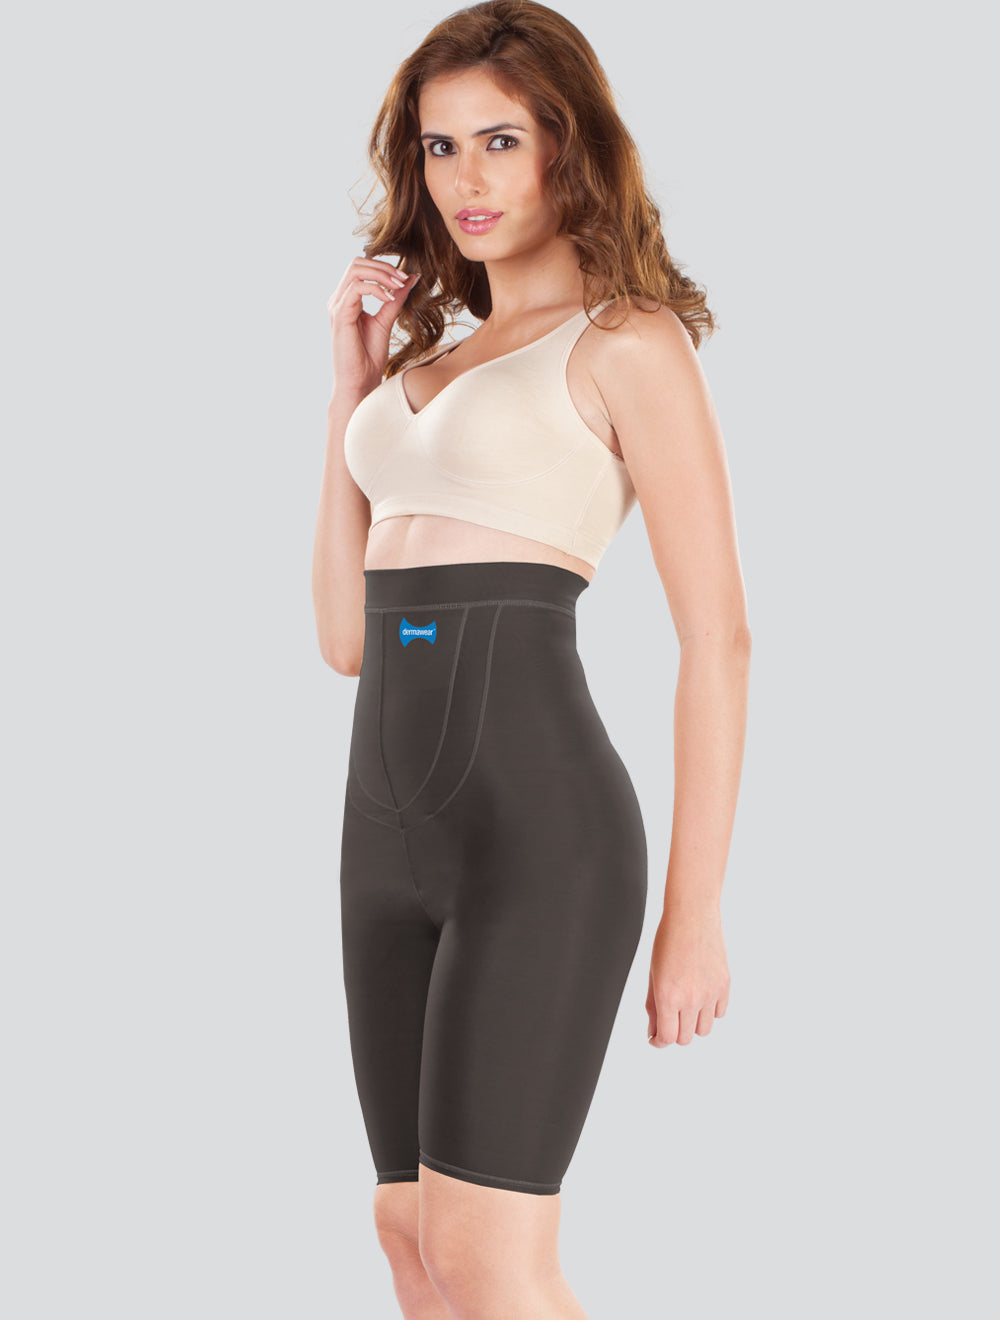 Dermawear Women's Unigrip Abdomen Shapewear (Model: Uni Grip